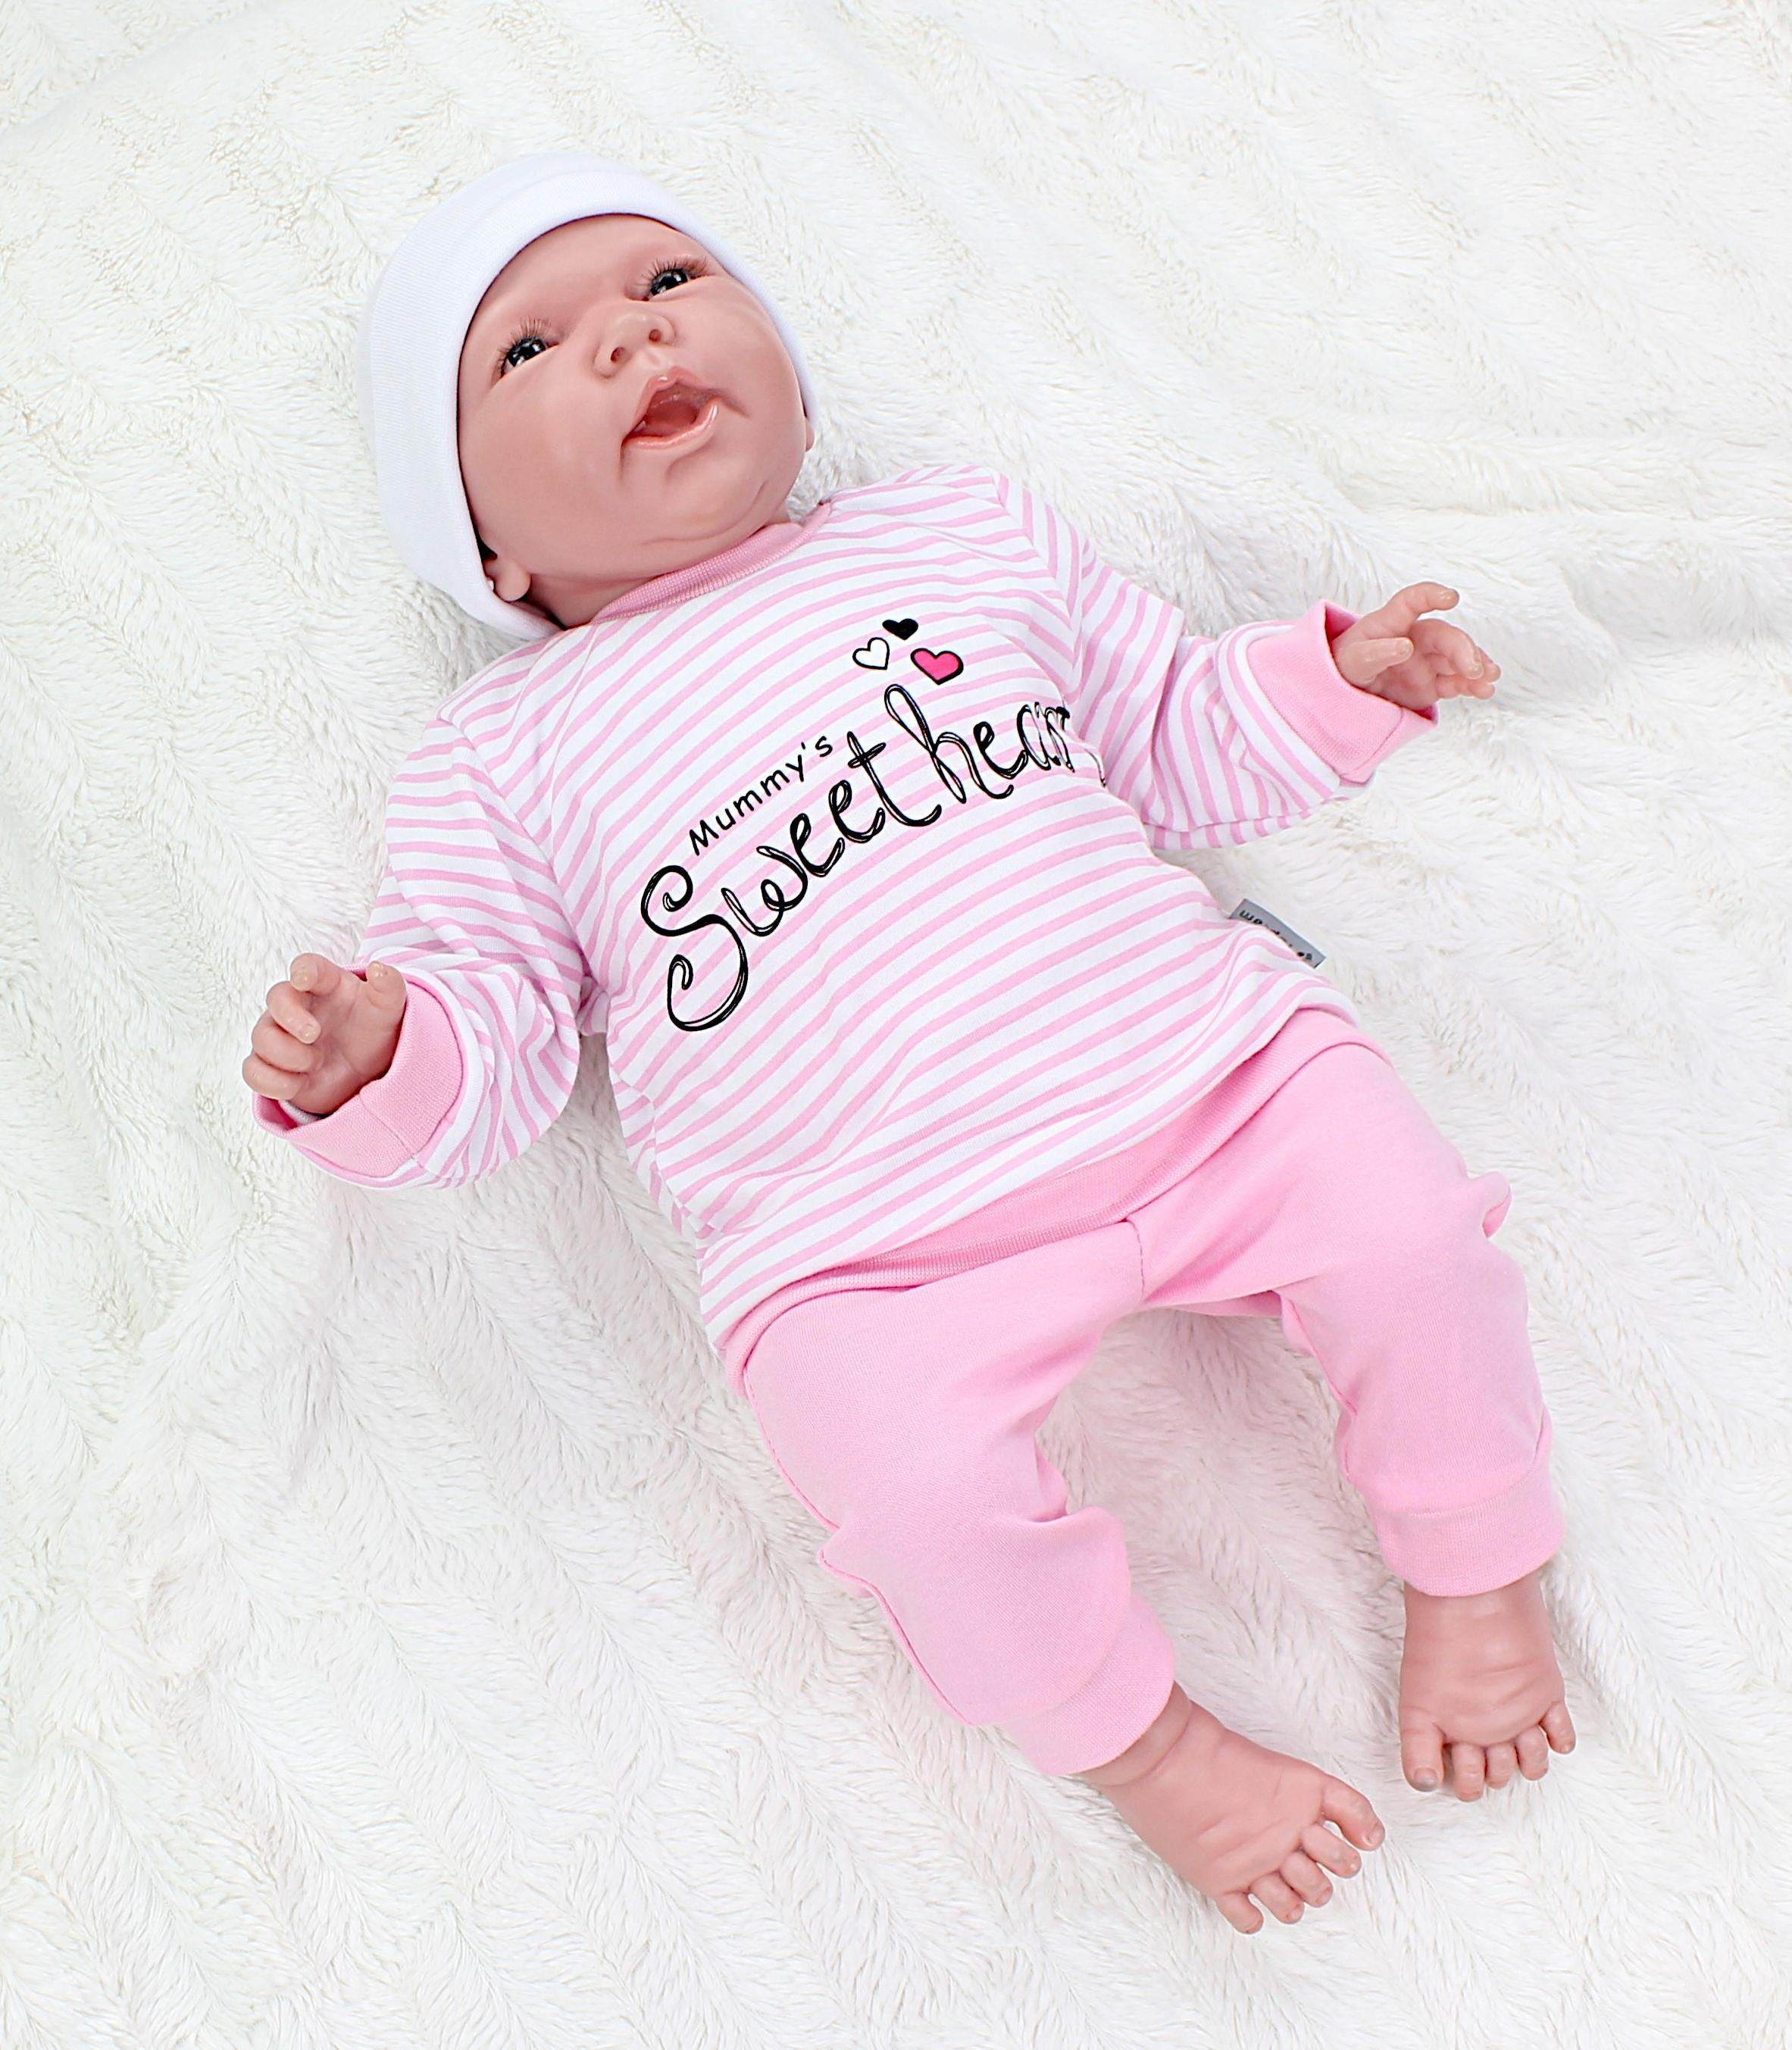 TupTam Baby 2teilig Mummy's Mädchen Streifen Langarmshirt mit Babyhose Spruch Babykleidung Sweetheart Erstausstattungspaket Rosa